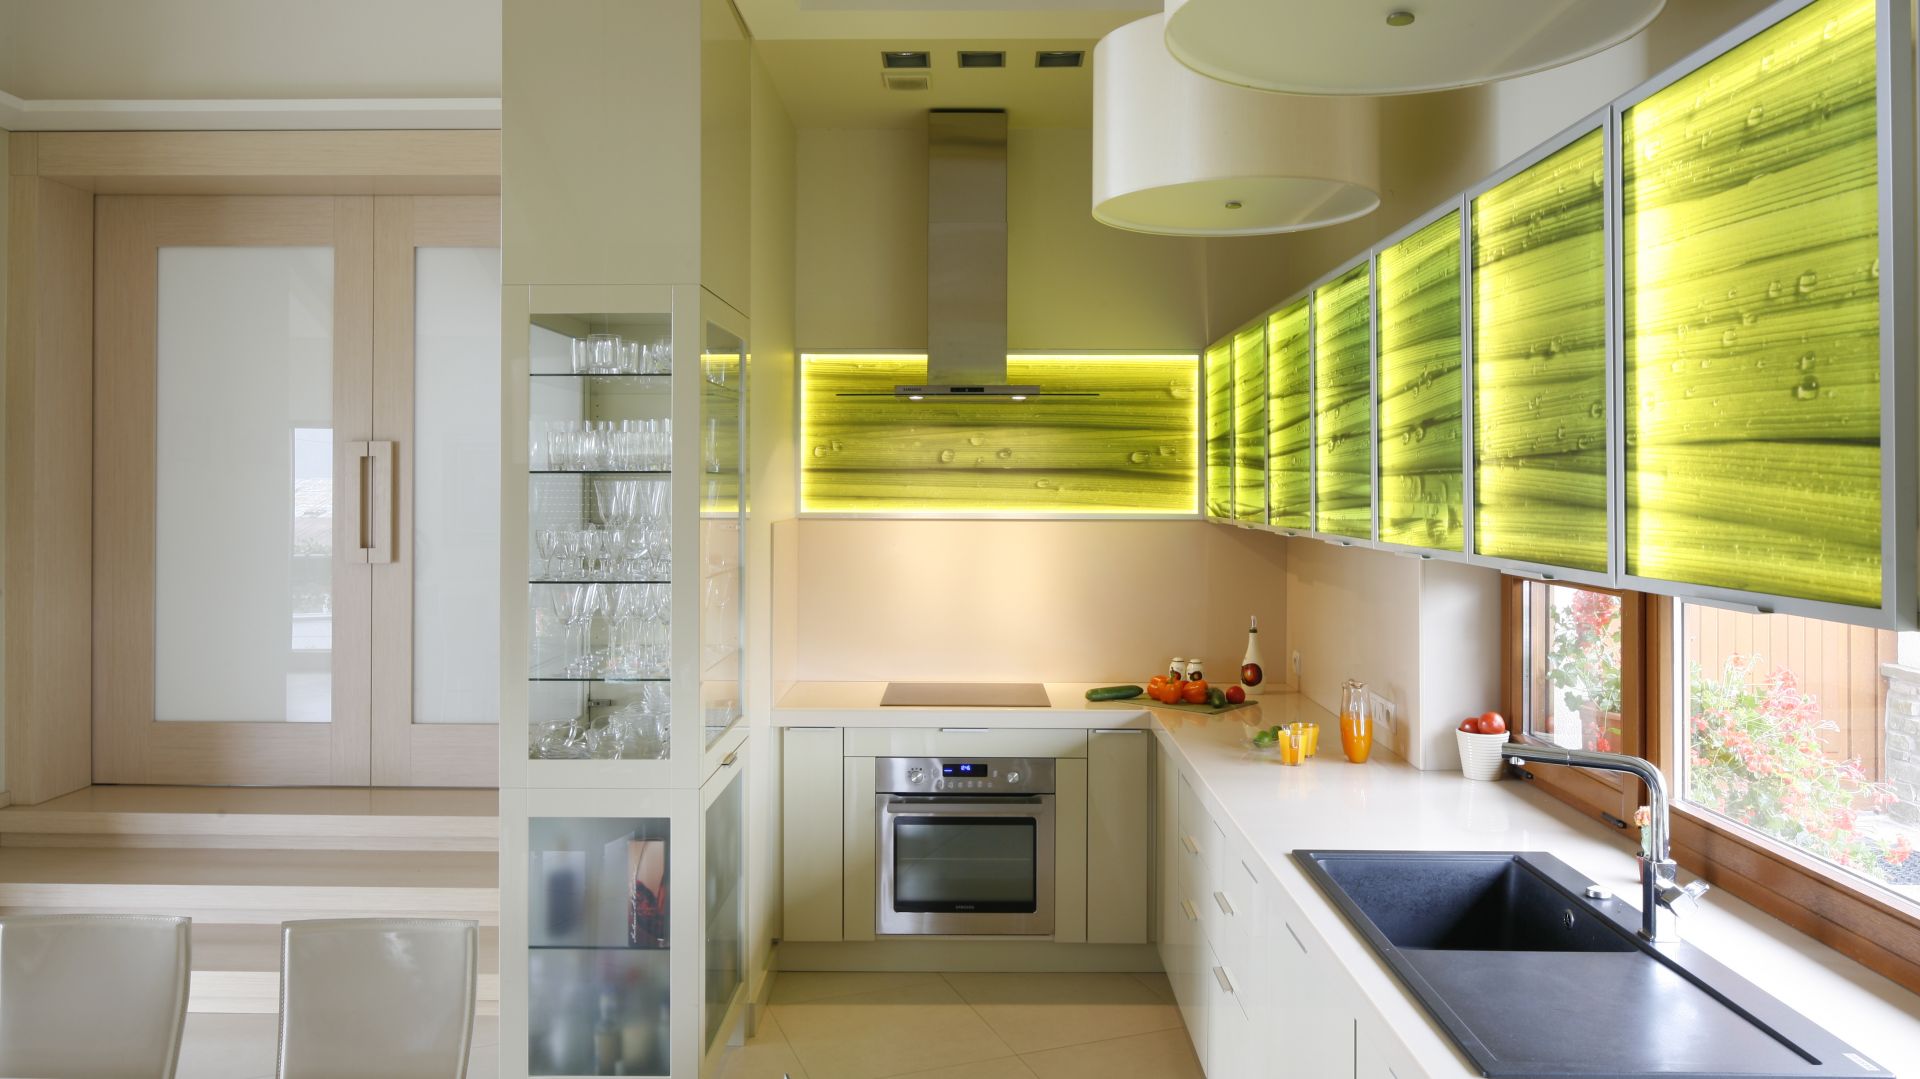 Efektowne podświetlenie szafek w kuchni